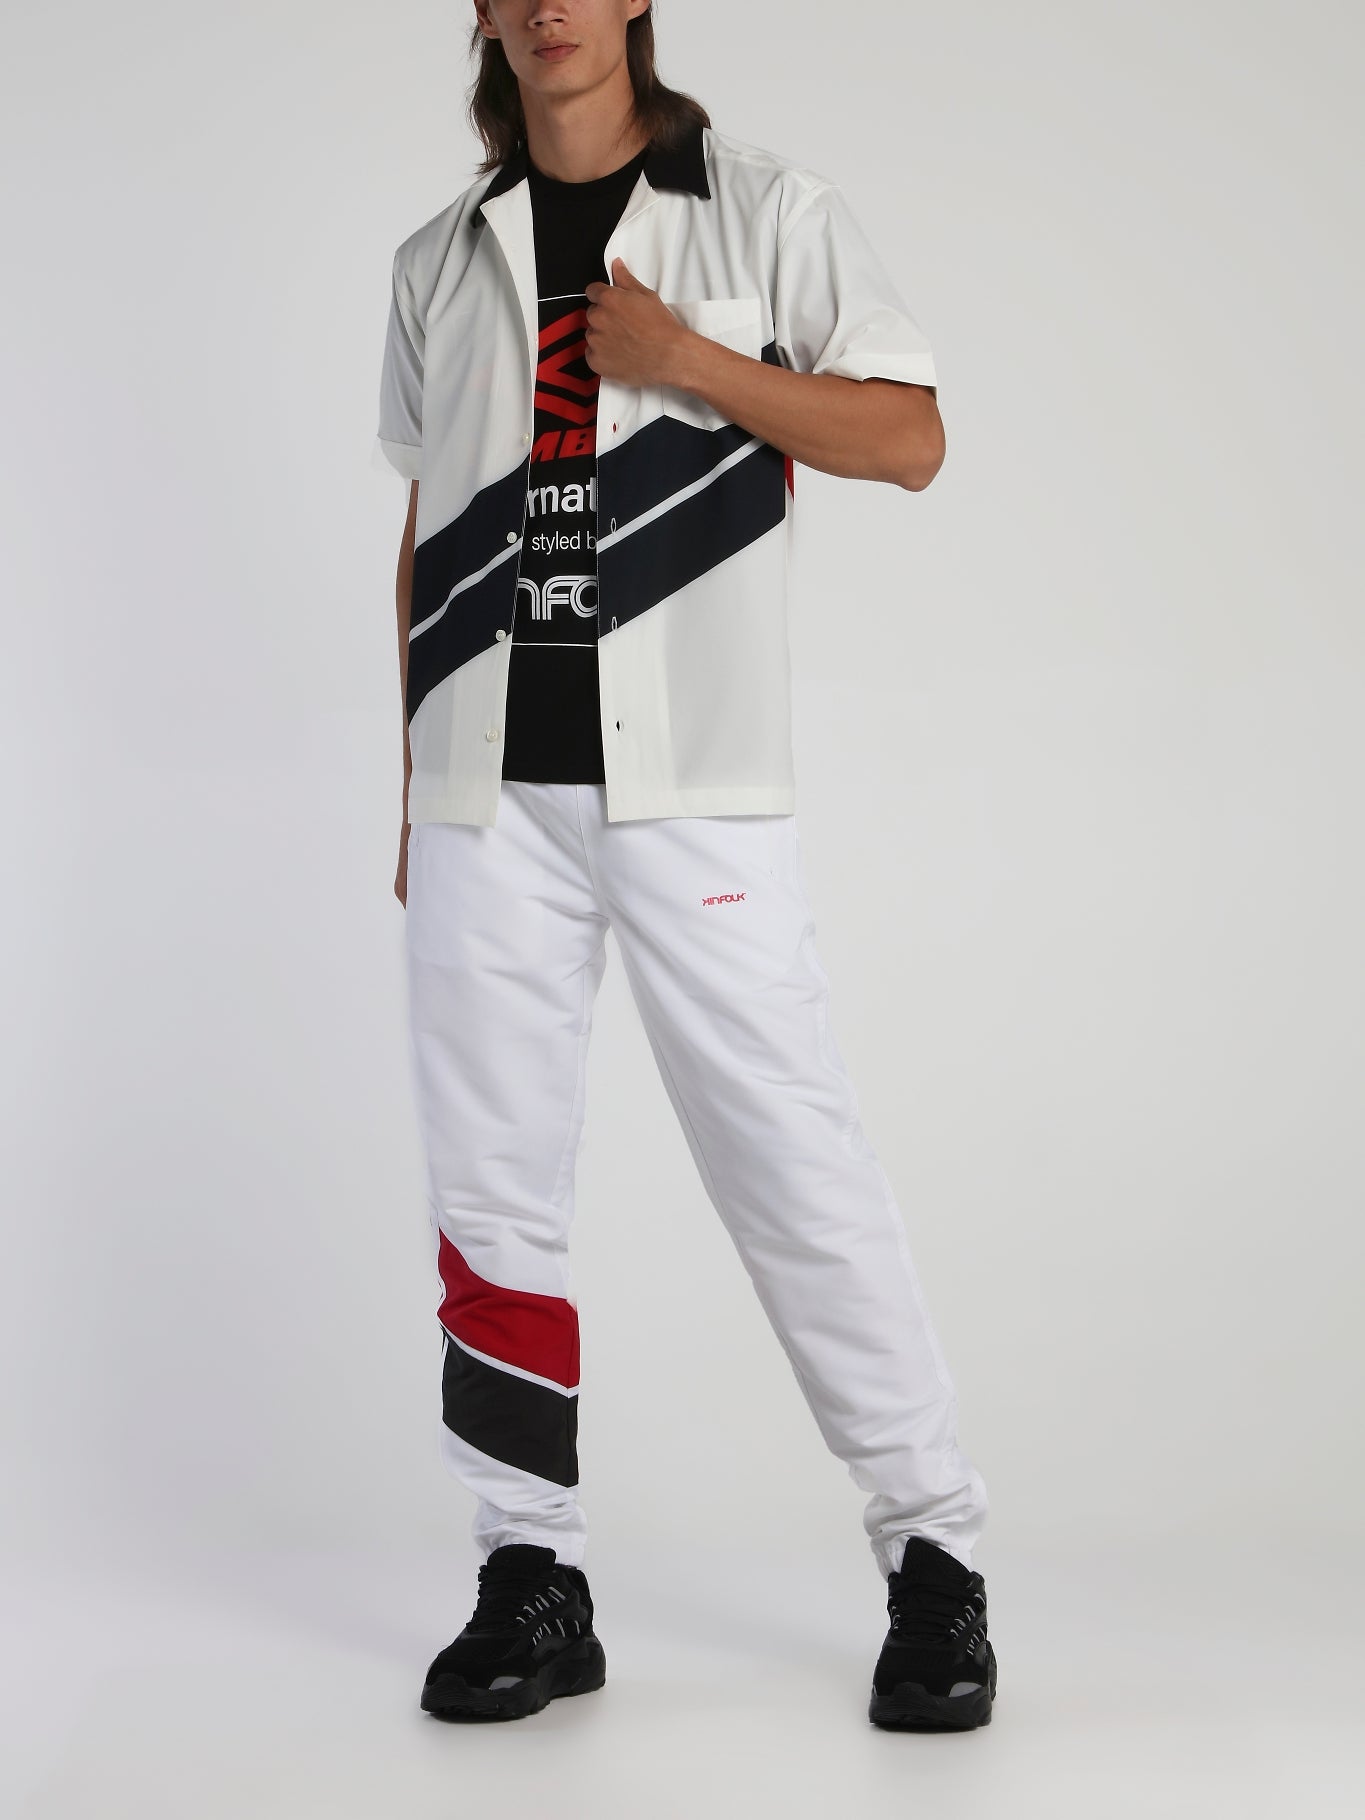 Kinfolk x Umbro White Football Shirt